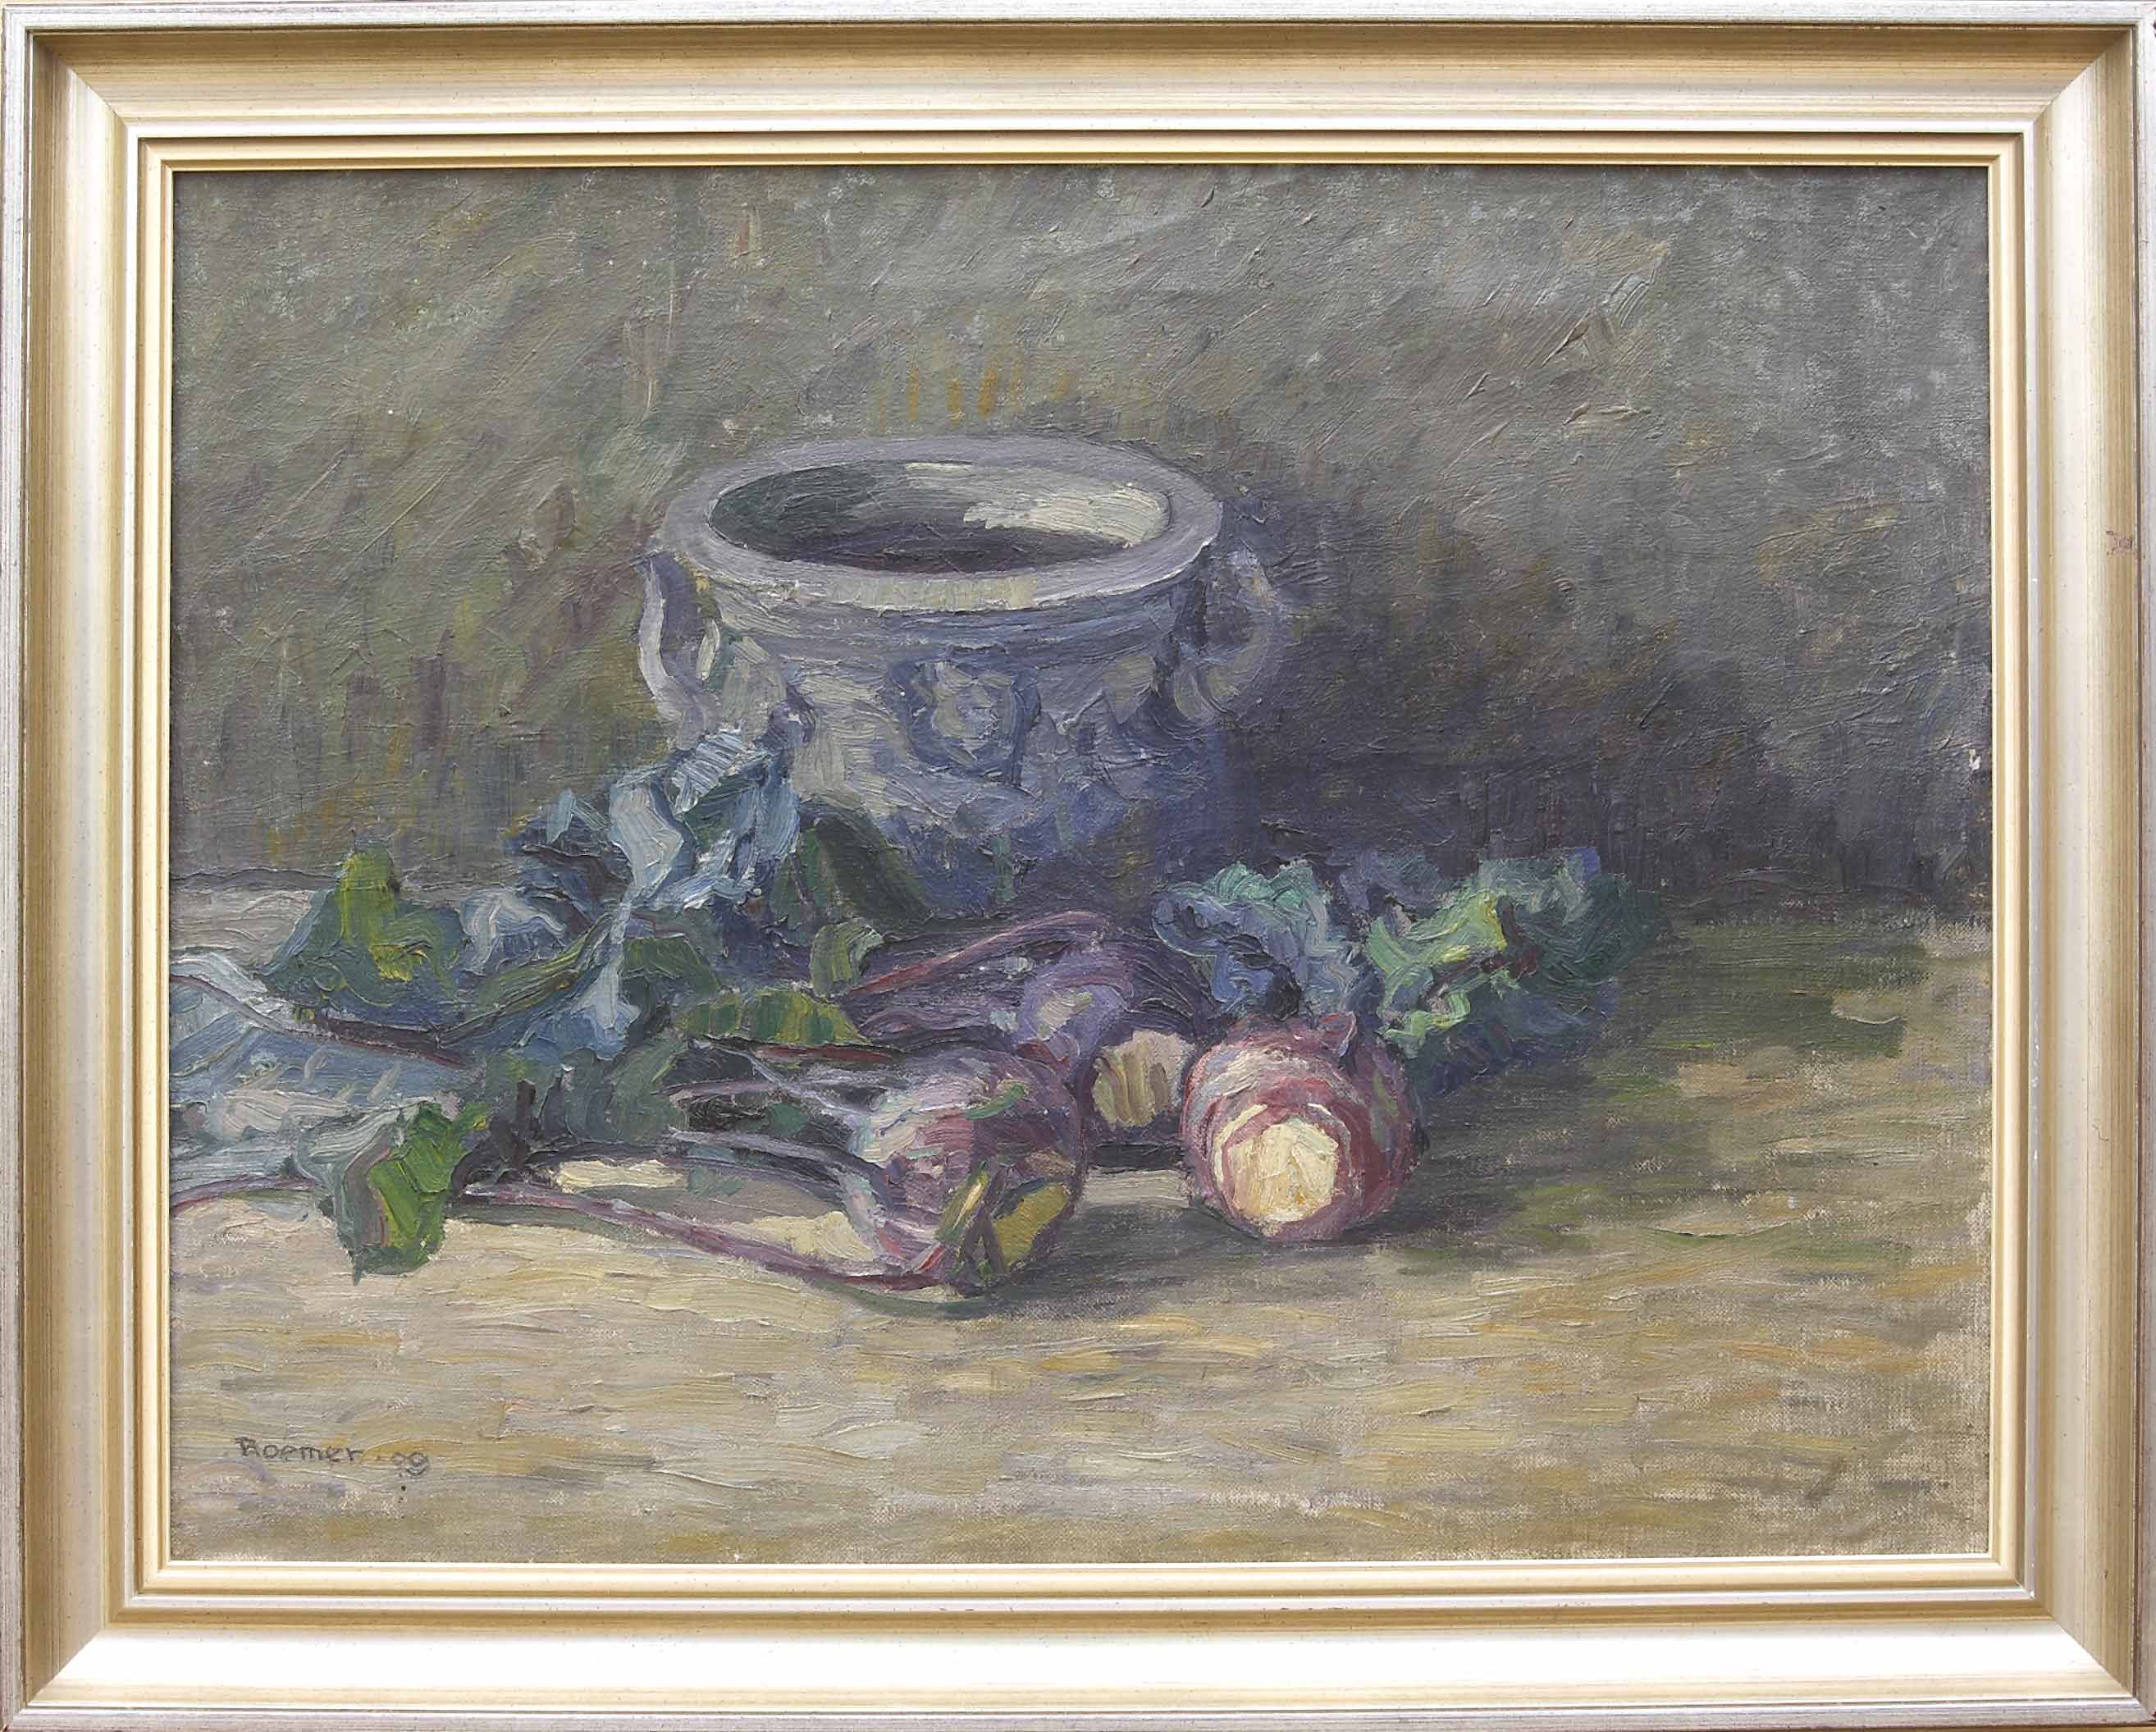 Auktionshaus Quentin Berlin  Gemälde Roemer (Maler um 1900) / Stillleben mit Kohlrabis und TongefÃ¤Ã. (19)09. Ãl auf Leinwand. 49 3 x 64 6 cm. Links unten signiert und datiert. Ge